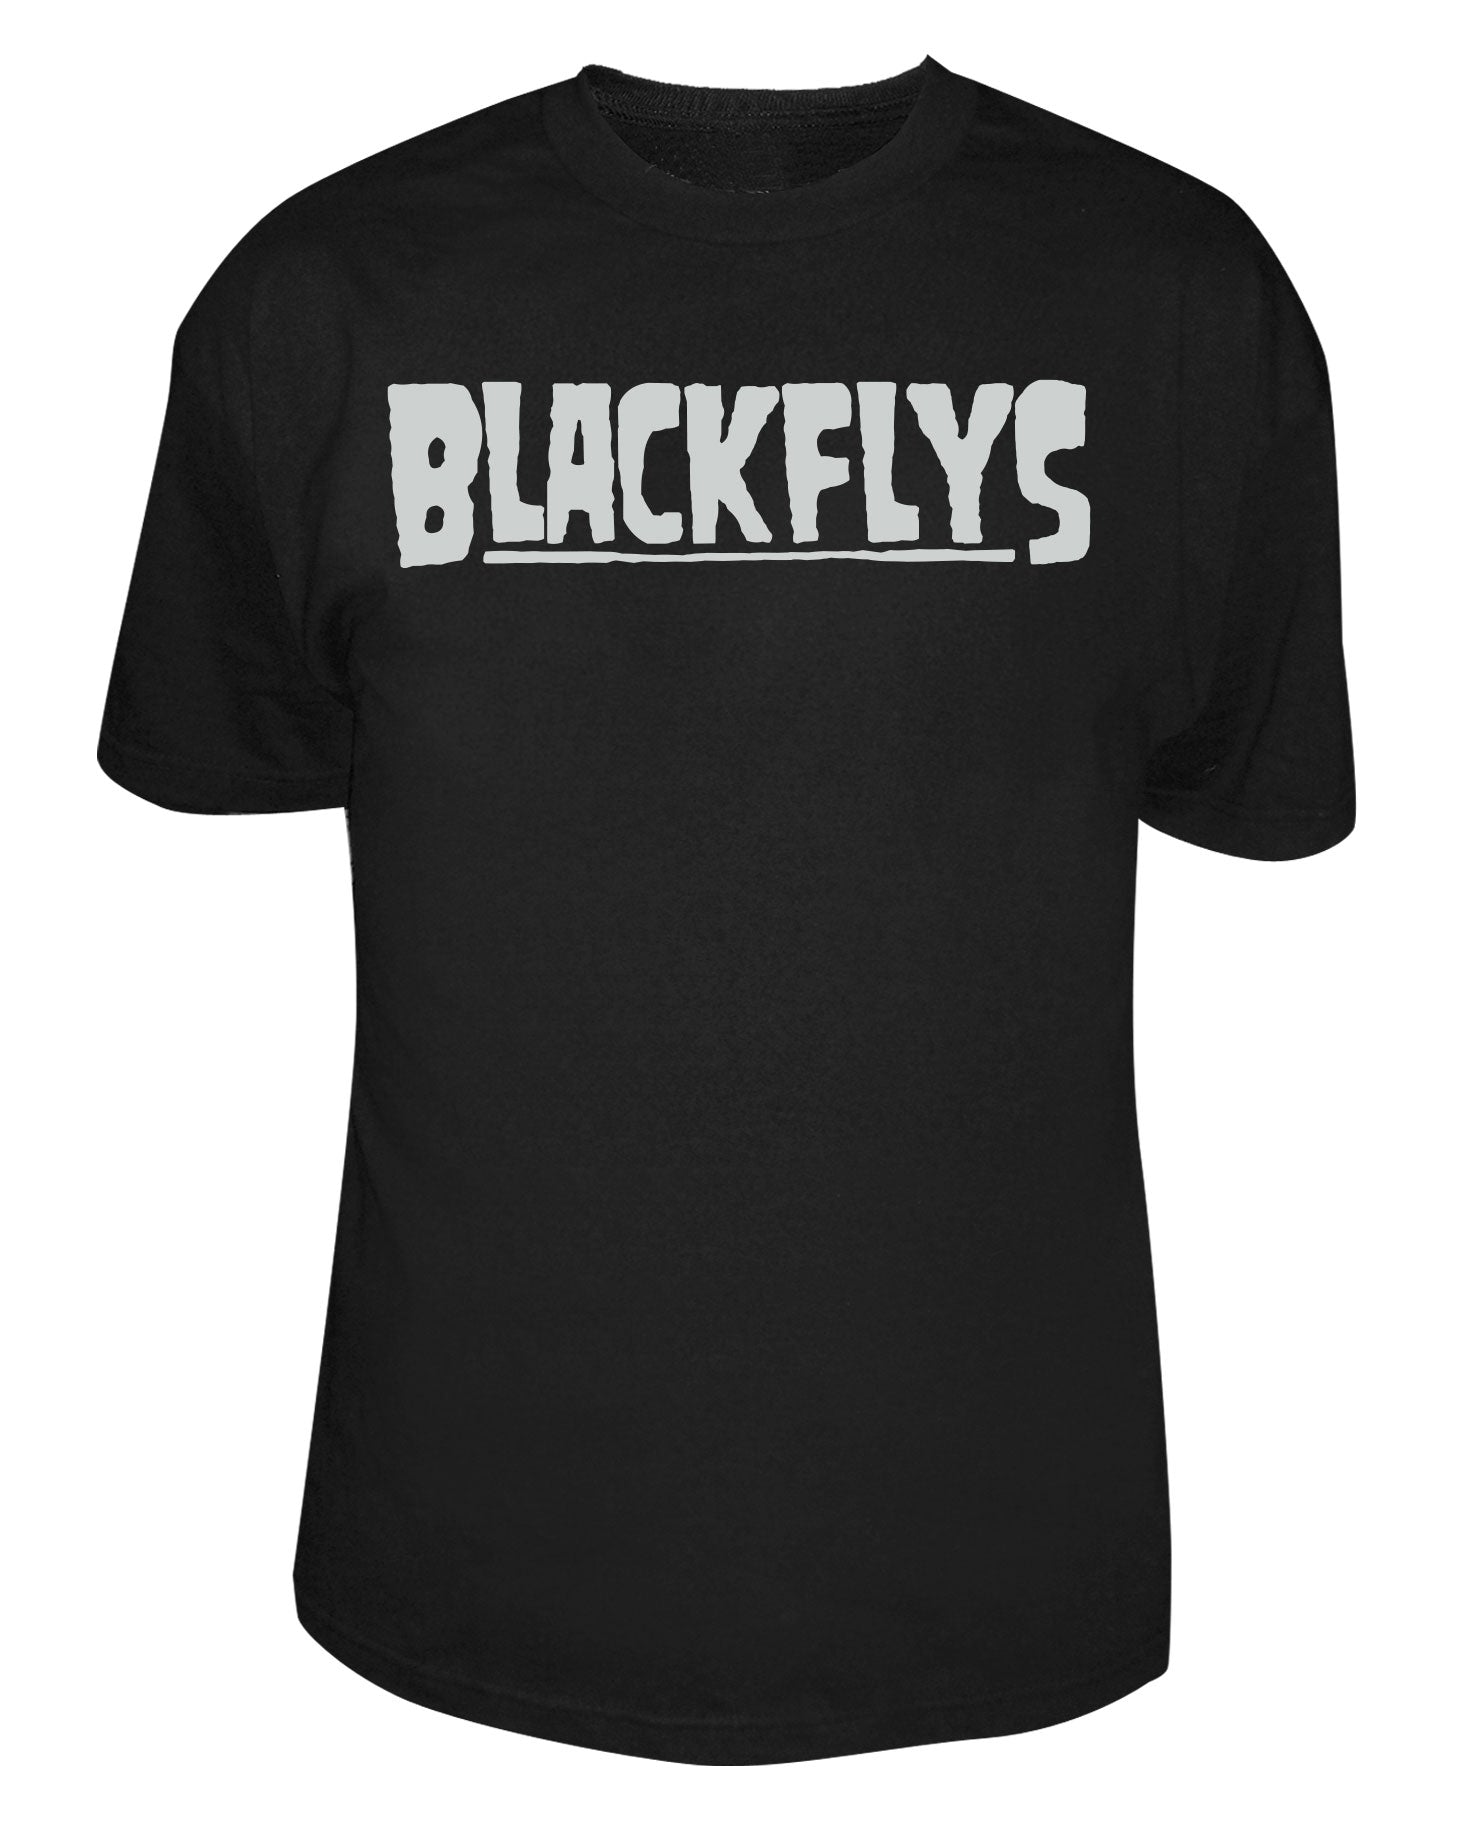 Black Flys Clothing for Men for sale